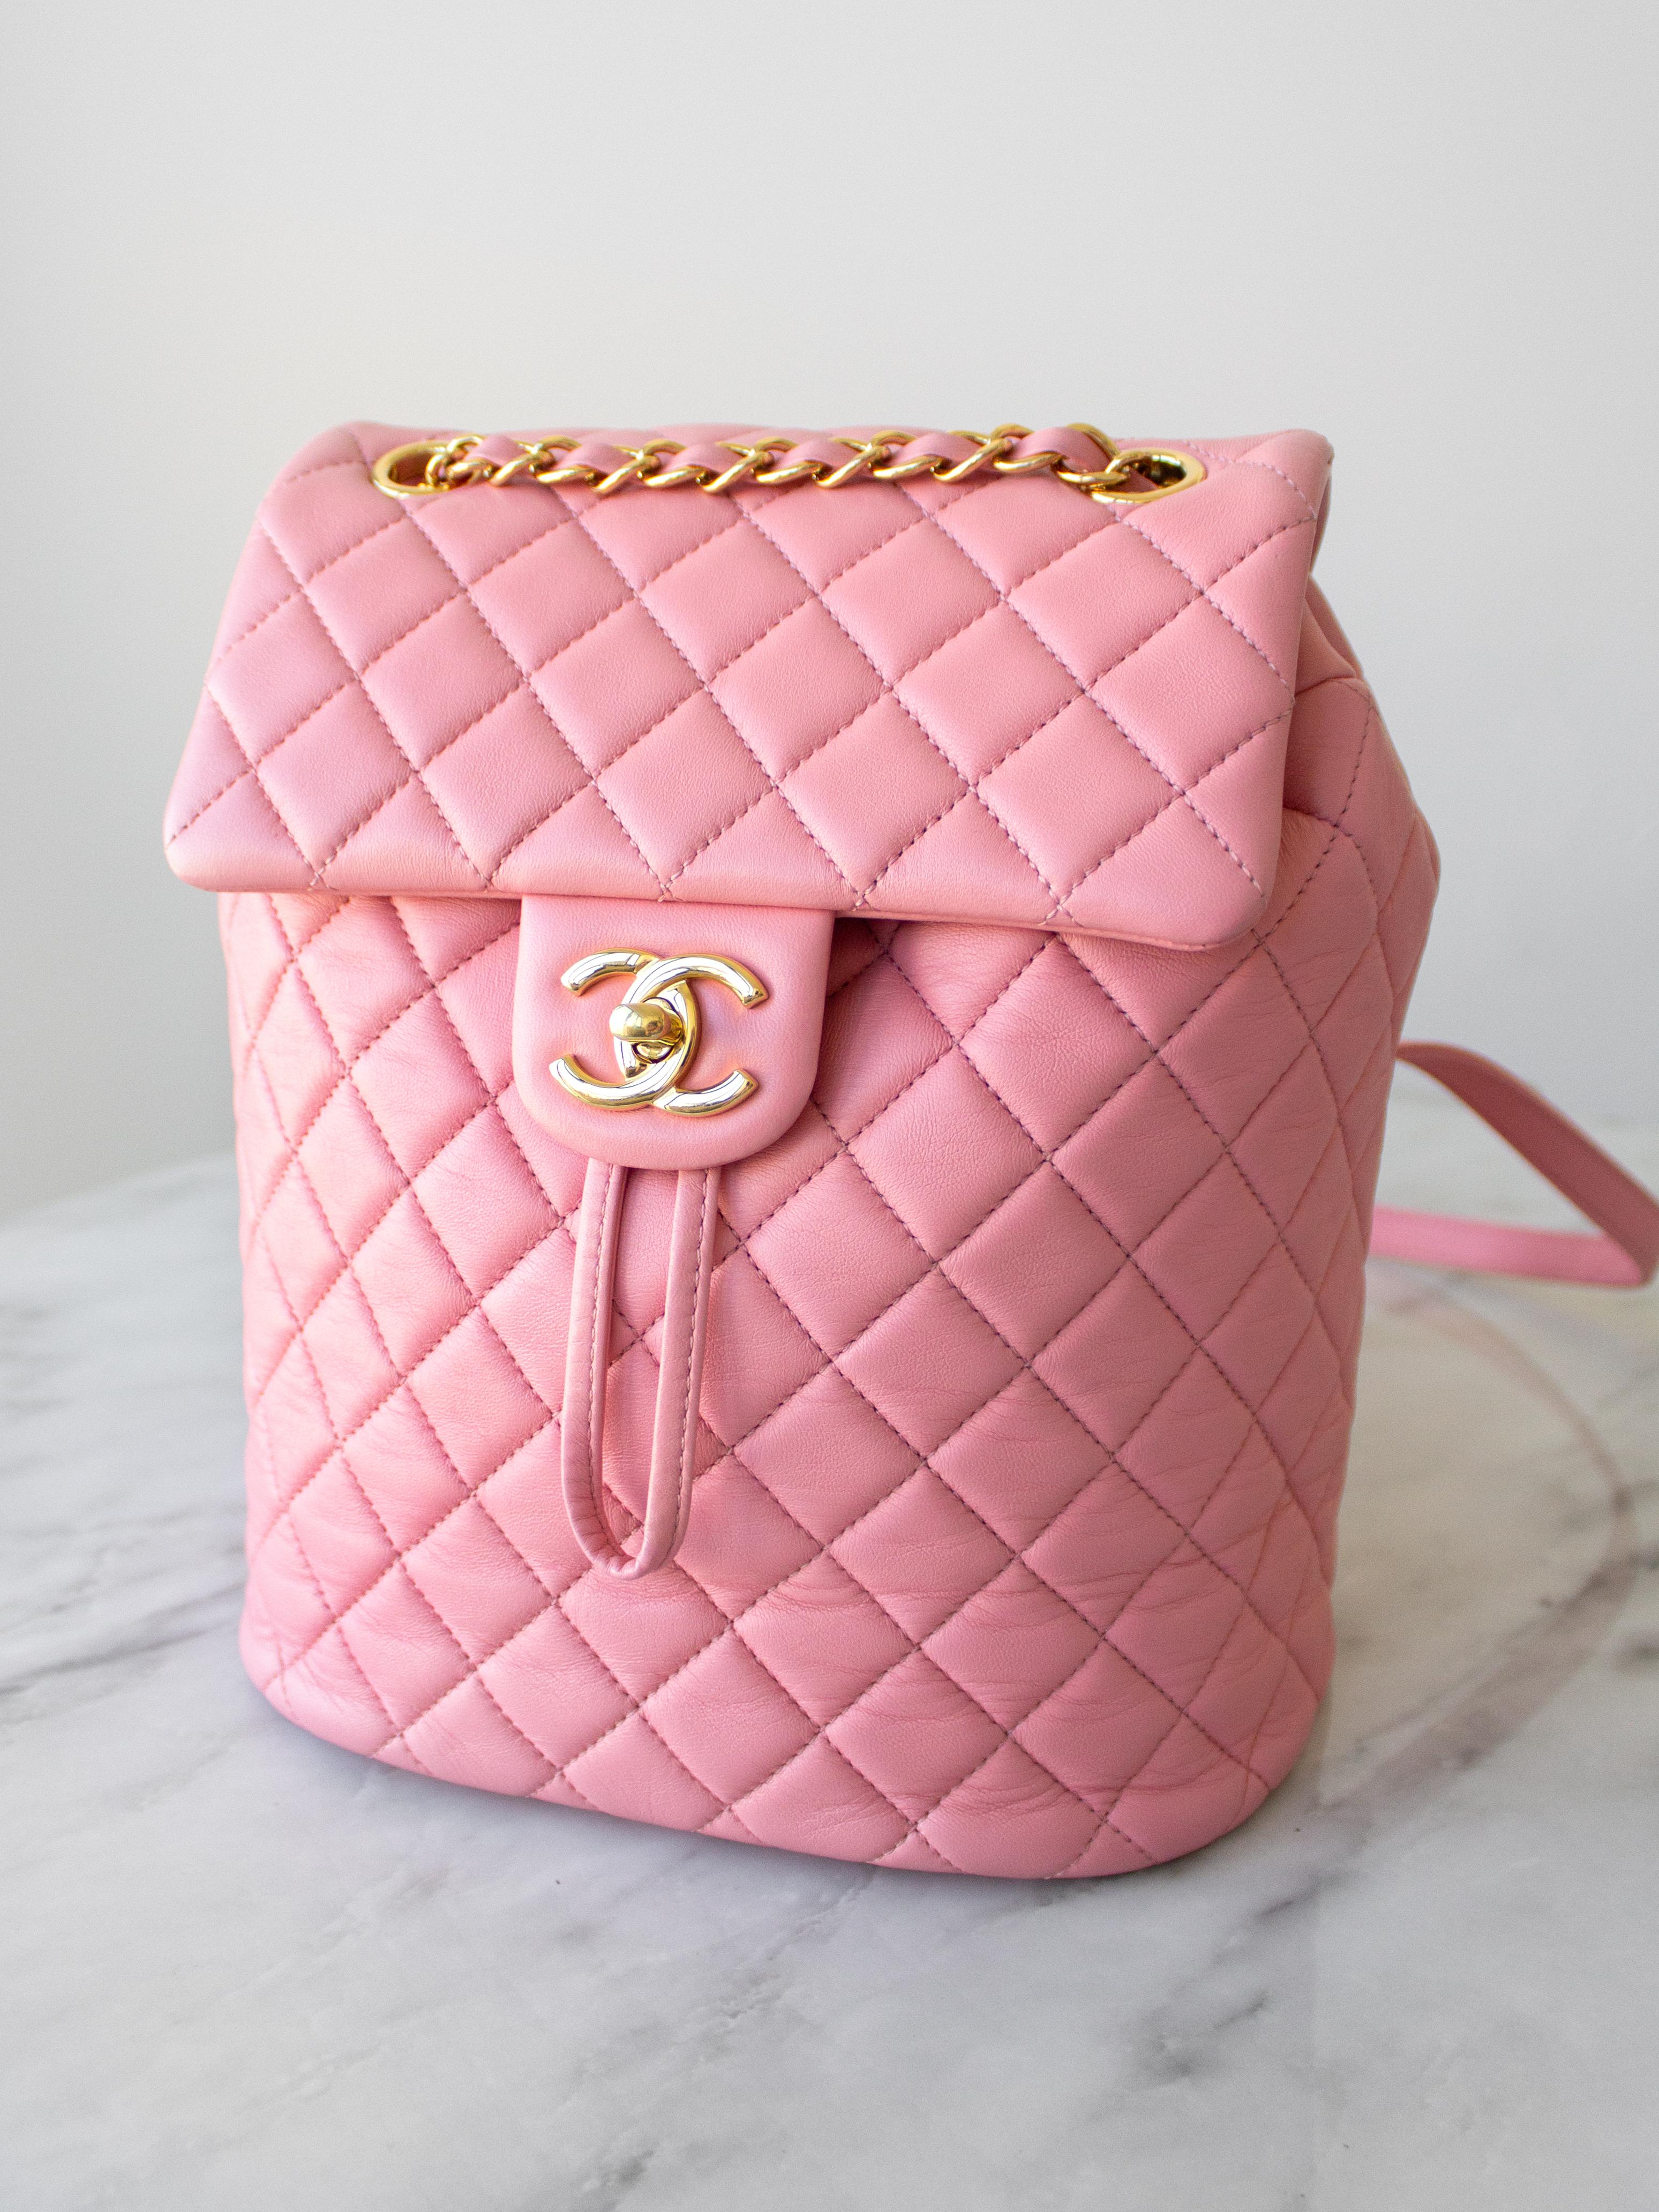 Der Chanel Small Urban Spirit Backpack ist ein wahrhaft schönes Stück Handwerkskunst. Dieser stilvolle und luxuriöse Rucksack ist aus weichem und glattem, rautenförmig gestepptem Leder in Bubble Gum Pink gefertigt und verfügt über Schulterriemen mit